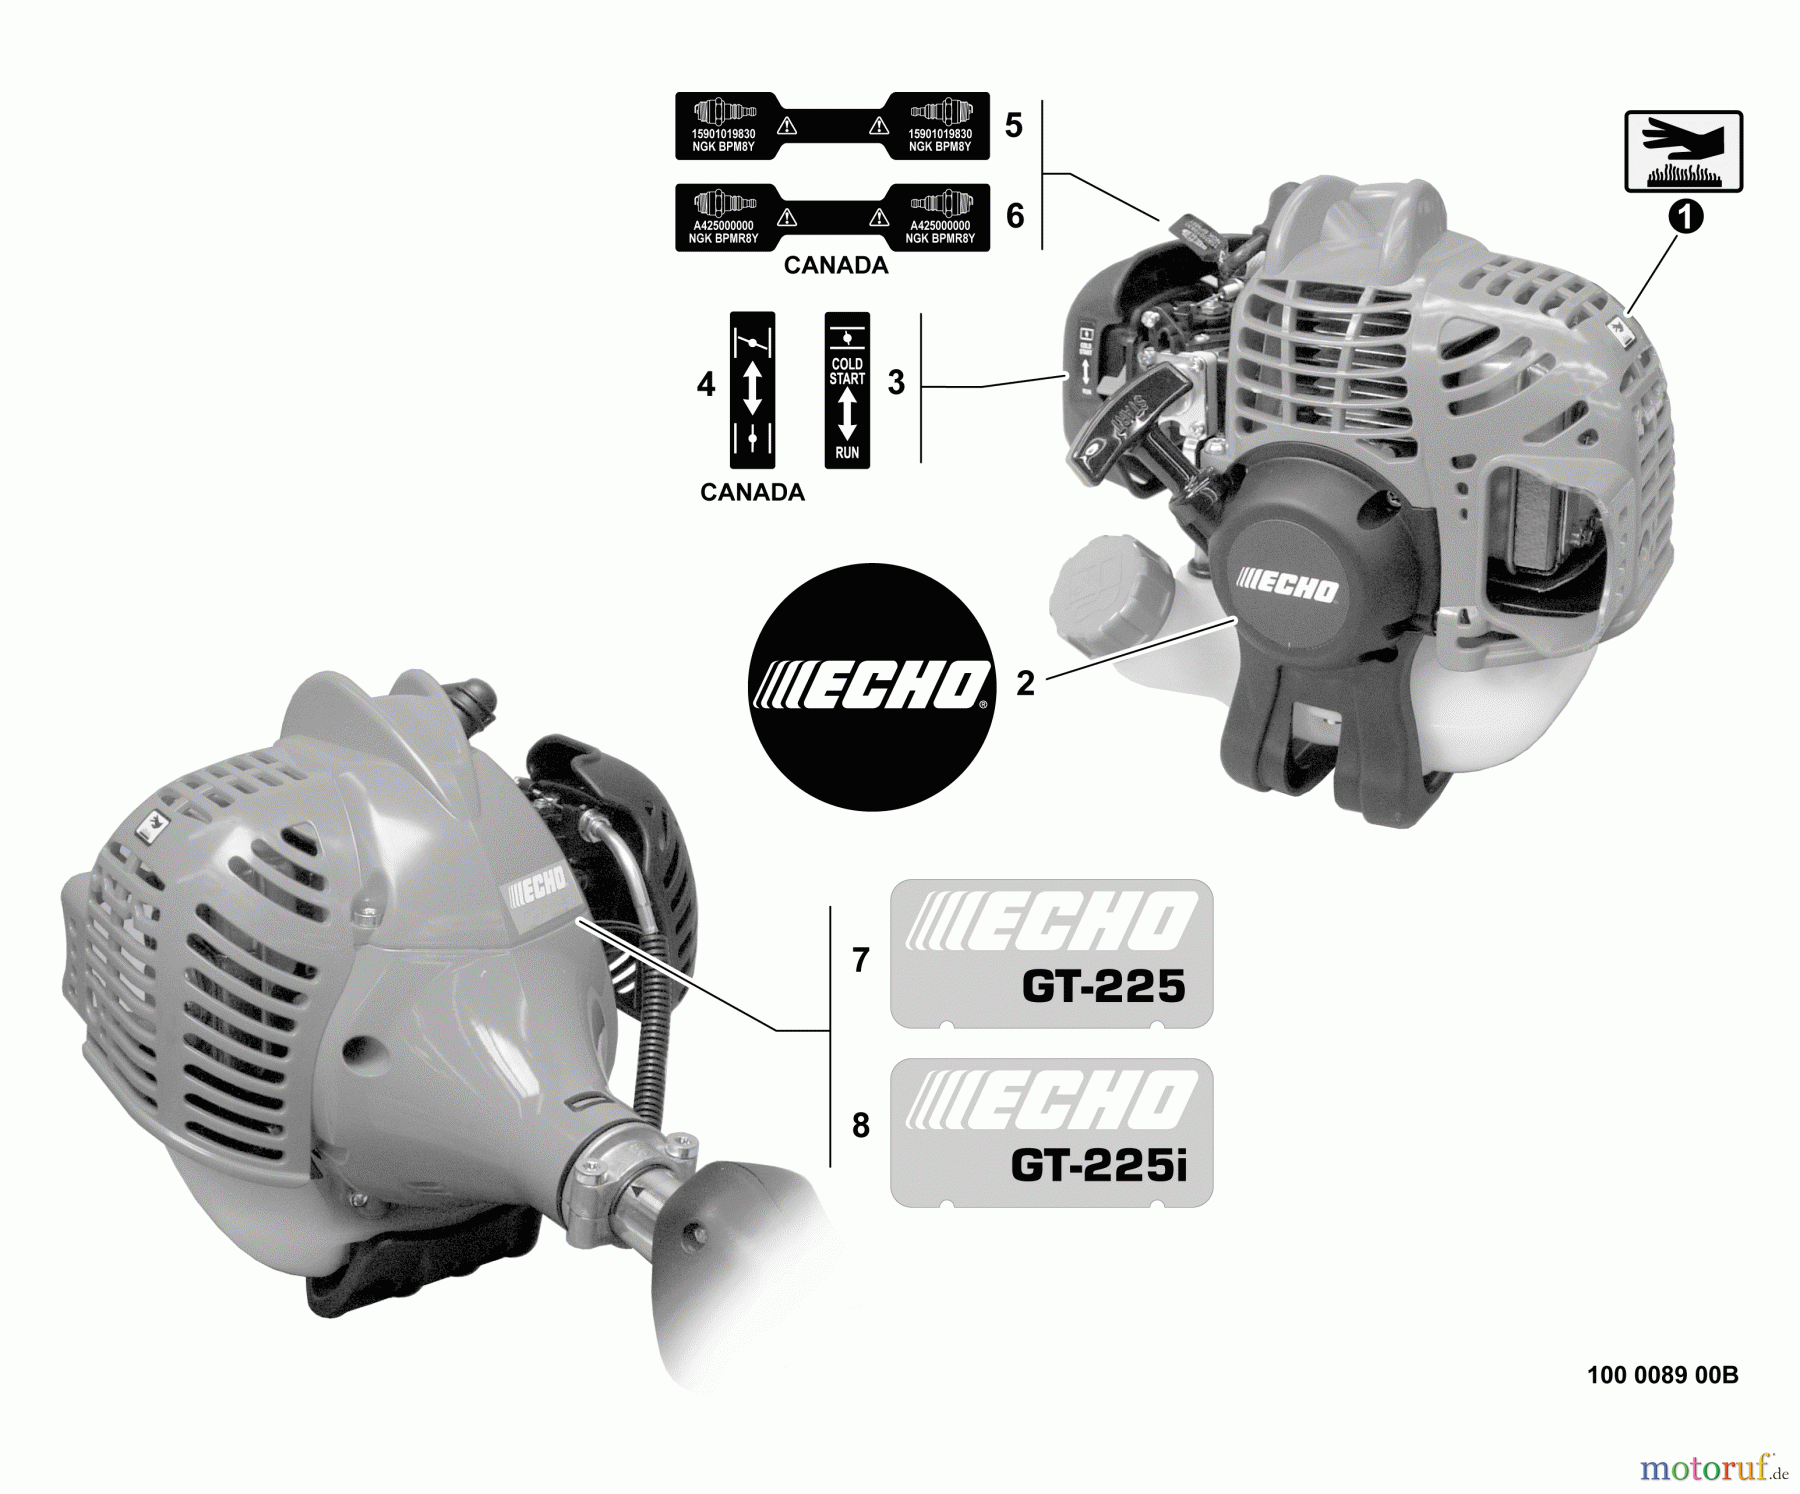  Echo Trimmer, Faden / Bürste GT-225 - Echo String Trimmer, S/N:S09313001001 - S09313999999 Labels